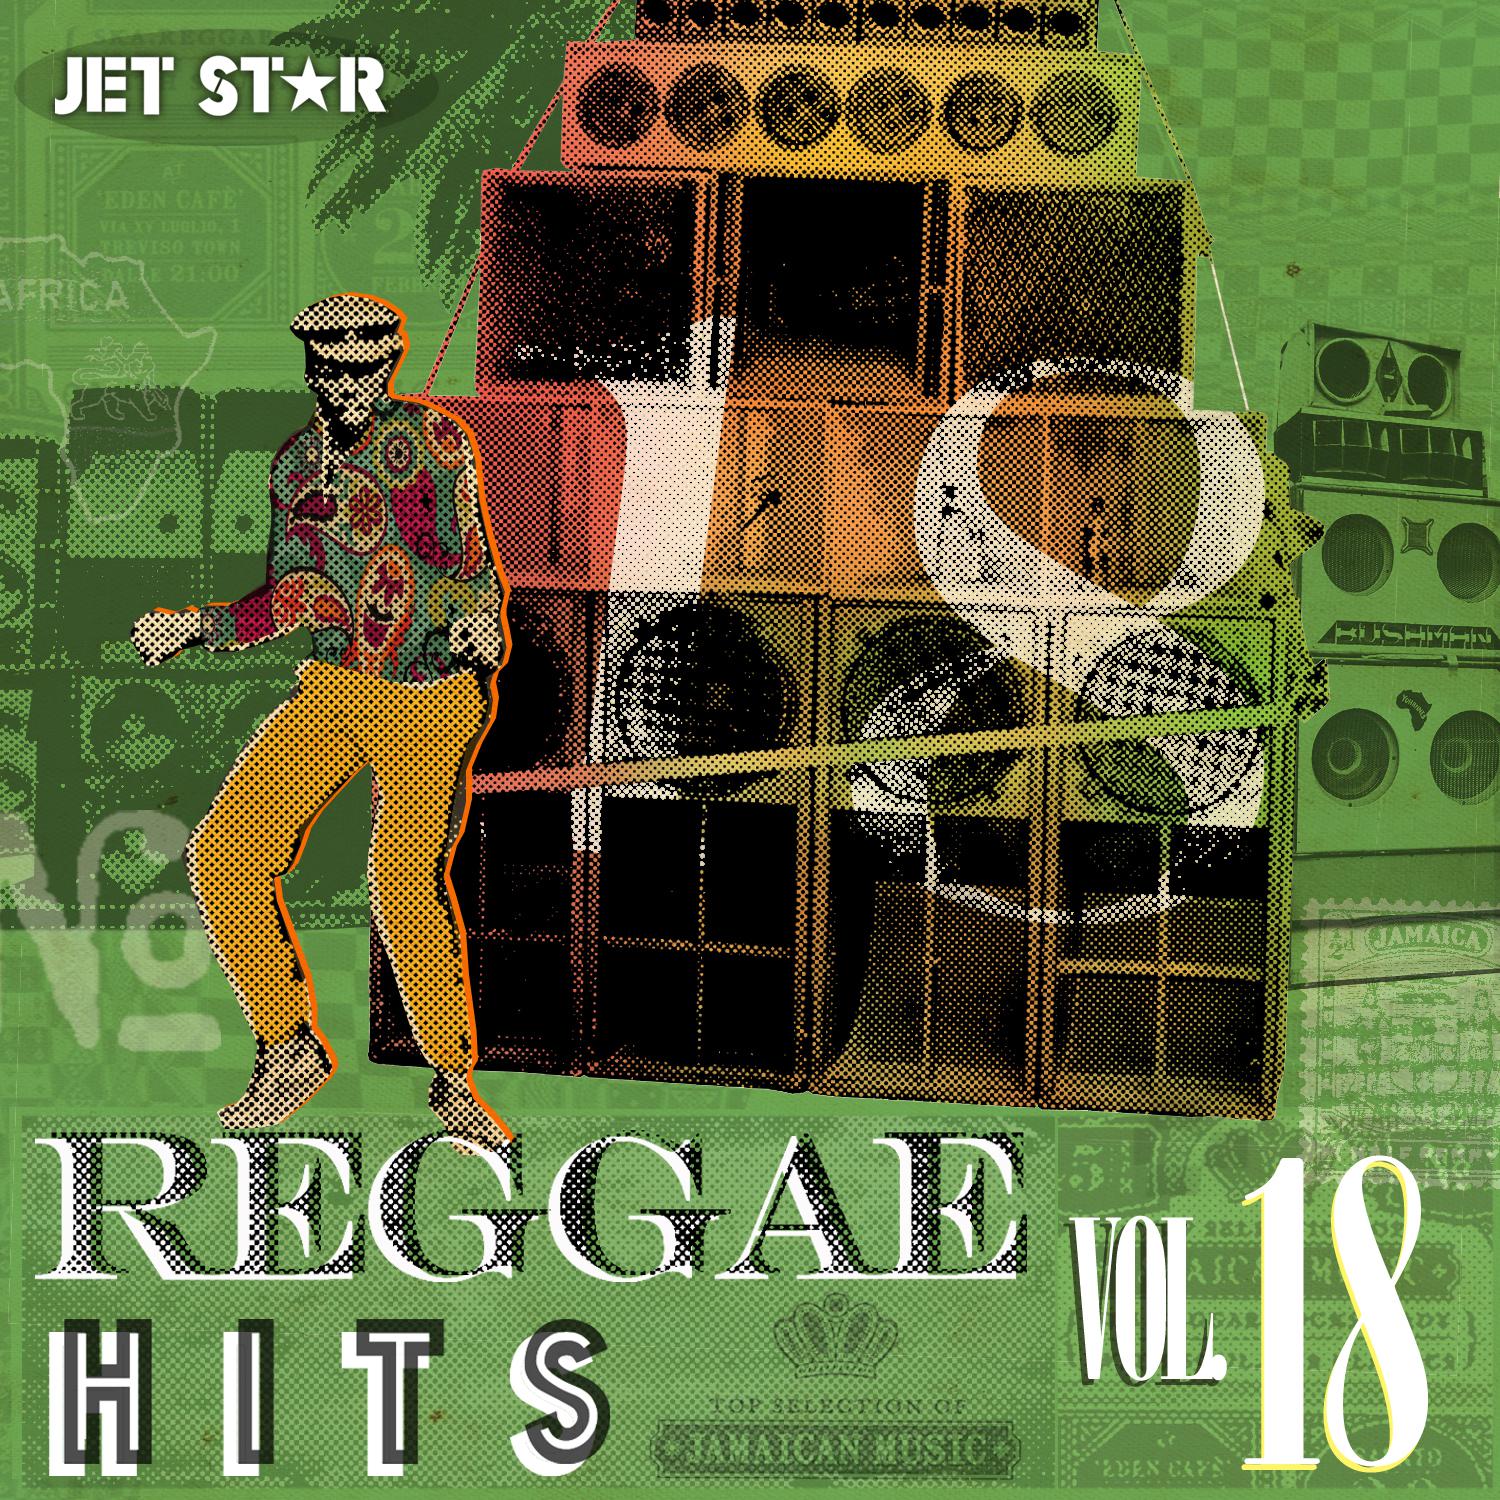 Reggae Hits, Vol. 18